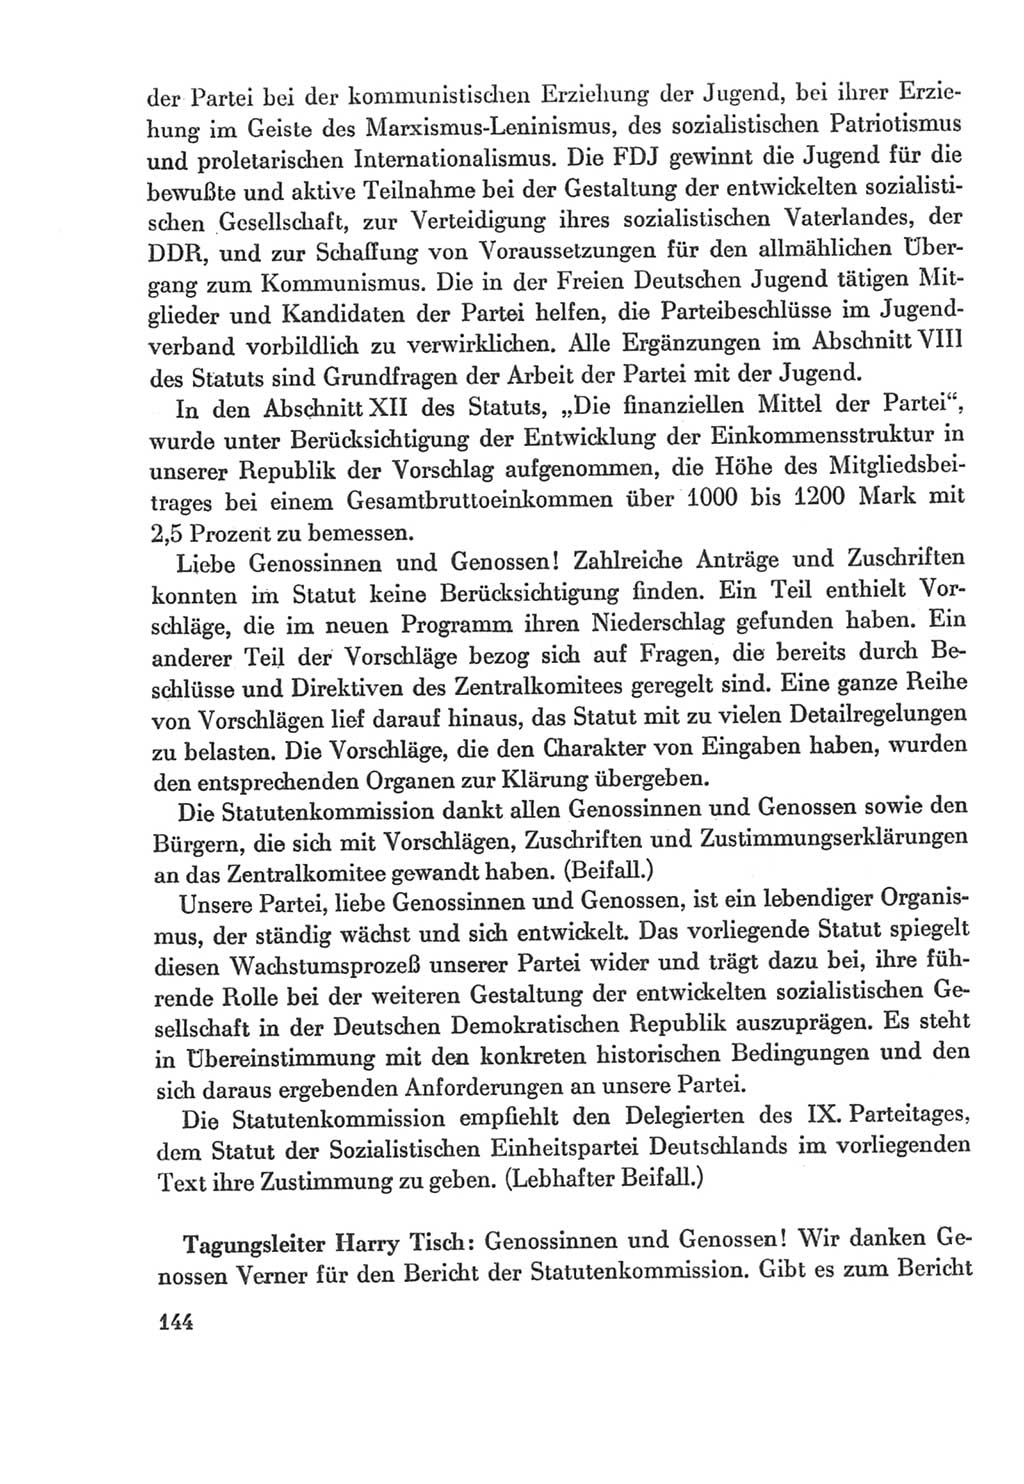 Protokoll der Verhandlungen des Ⅸ. Parteitages der Sozialistischen Einheitspartei Deutschlands (SED) [Deutsche Demokratische Republik (DDR)] 1976, Band 2, Seite 144 (Prot. Verh. Ⅸ. PT SED DDR 1976, Bd. 2, S. 144)